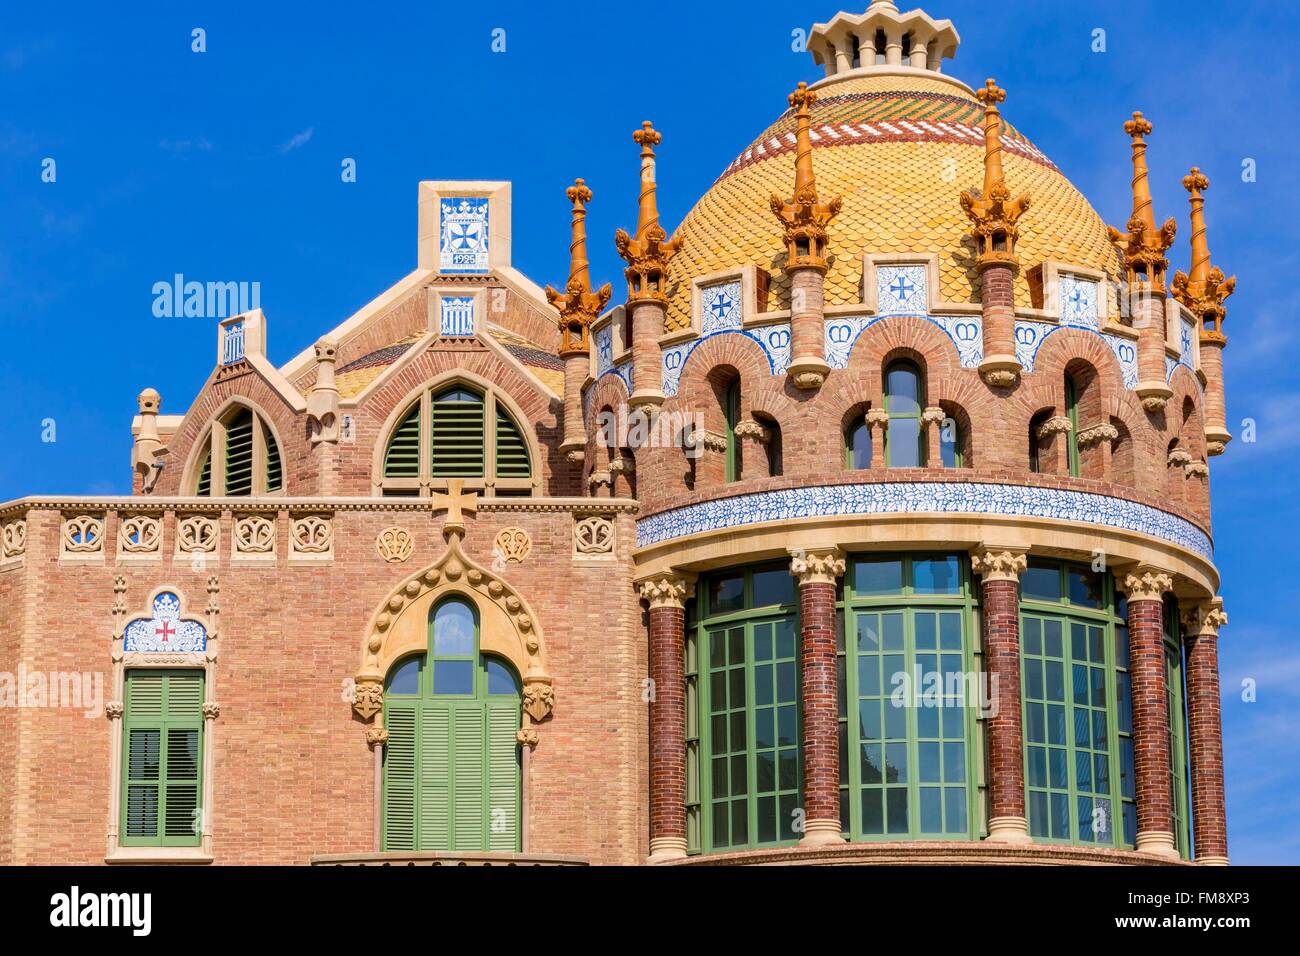 Espagne, Catalogne, Barcelone, El Guinardo, l'hôpital Sant Pau conçu en 1901 par l'architecte Catalan Lluis Domenech i Montaner, Sant Pau, site du patrimoine mondial de l'UNESCO depuis 1997 est la plus grande du monde entier moderniste Banque D'Images